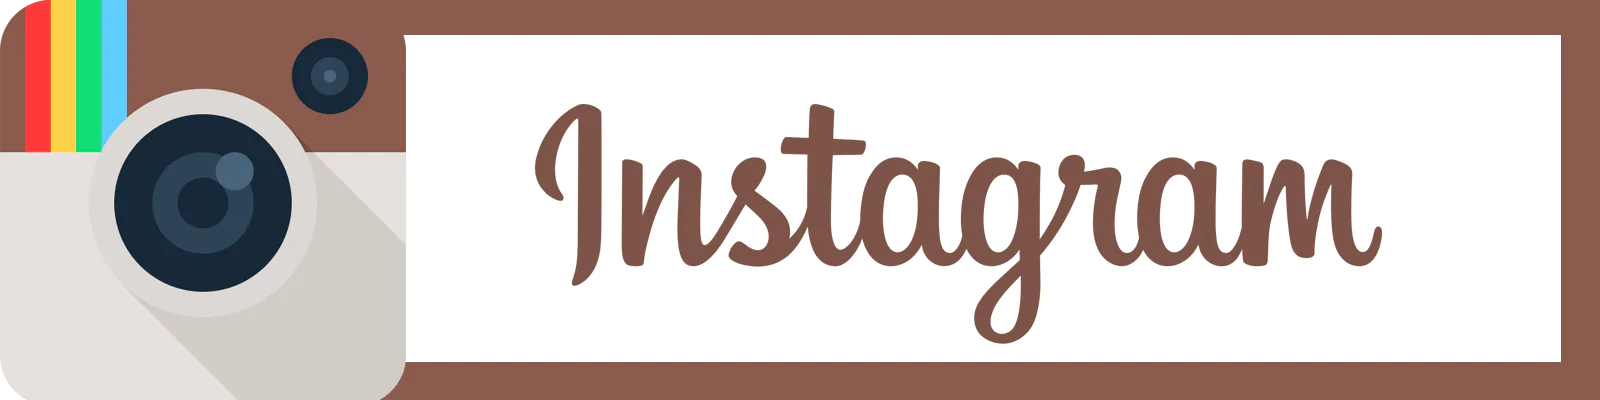 Instagram: profili con più followers